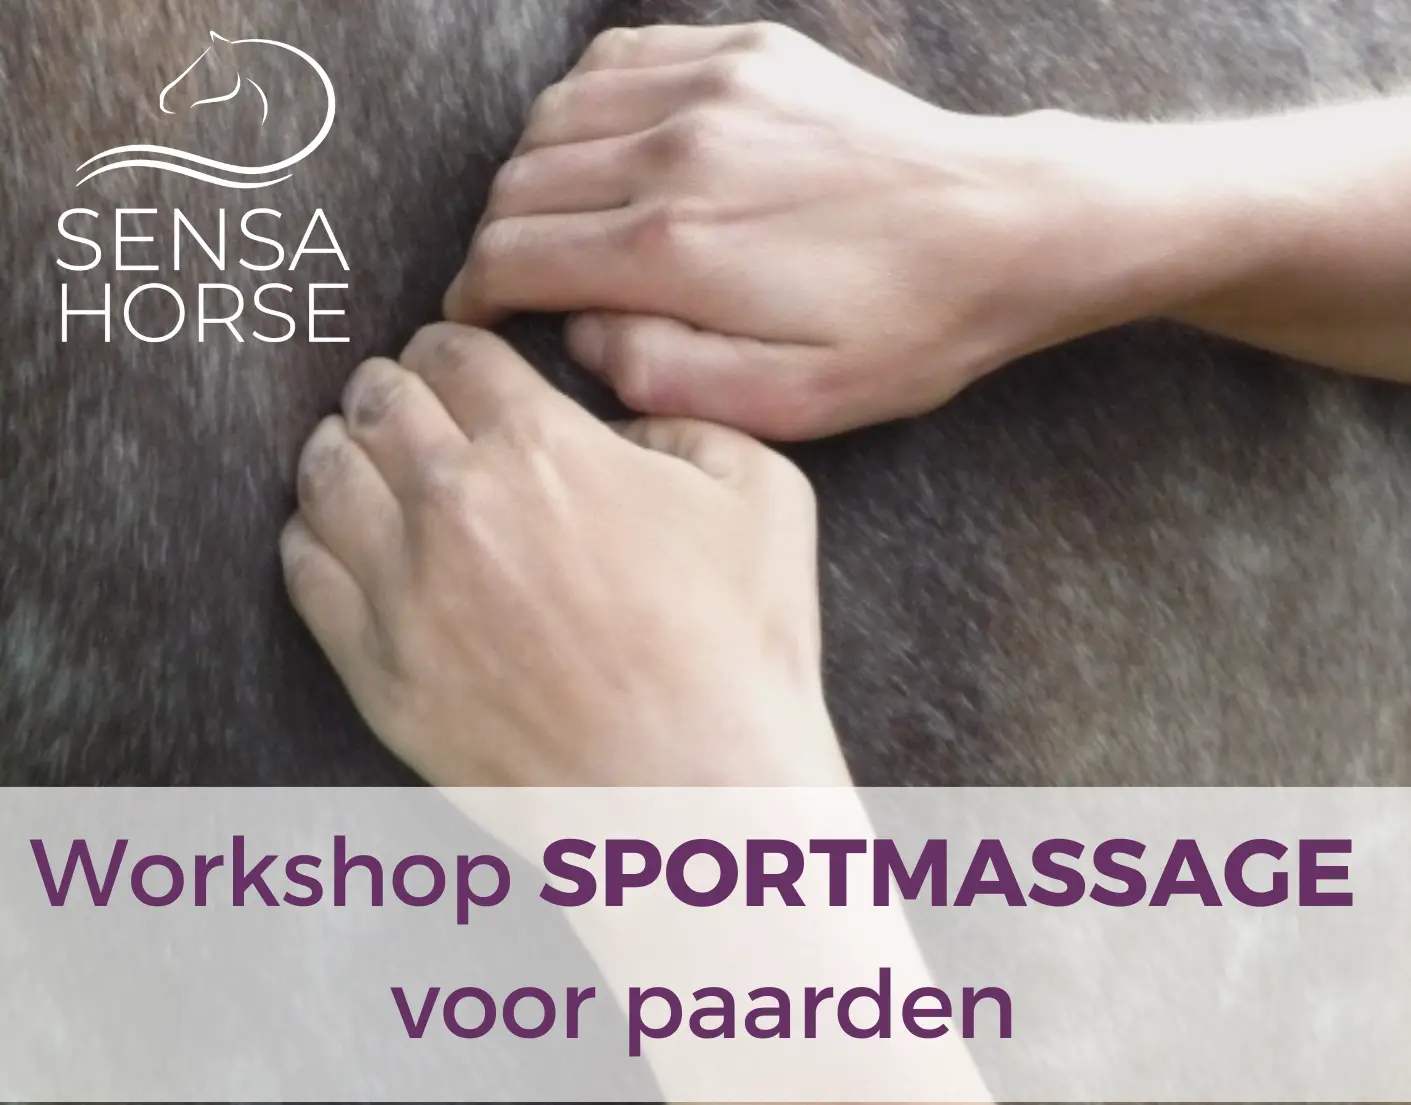 Workshop Sportmassage